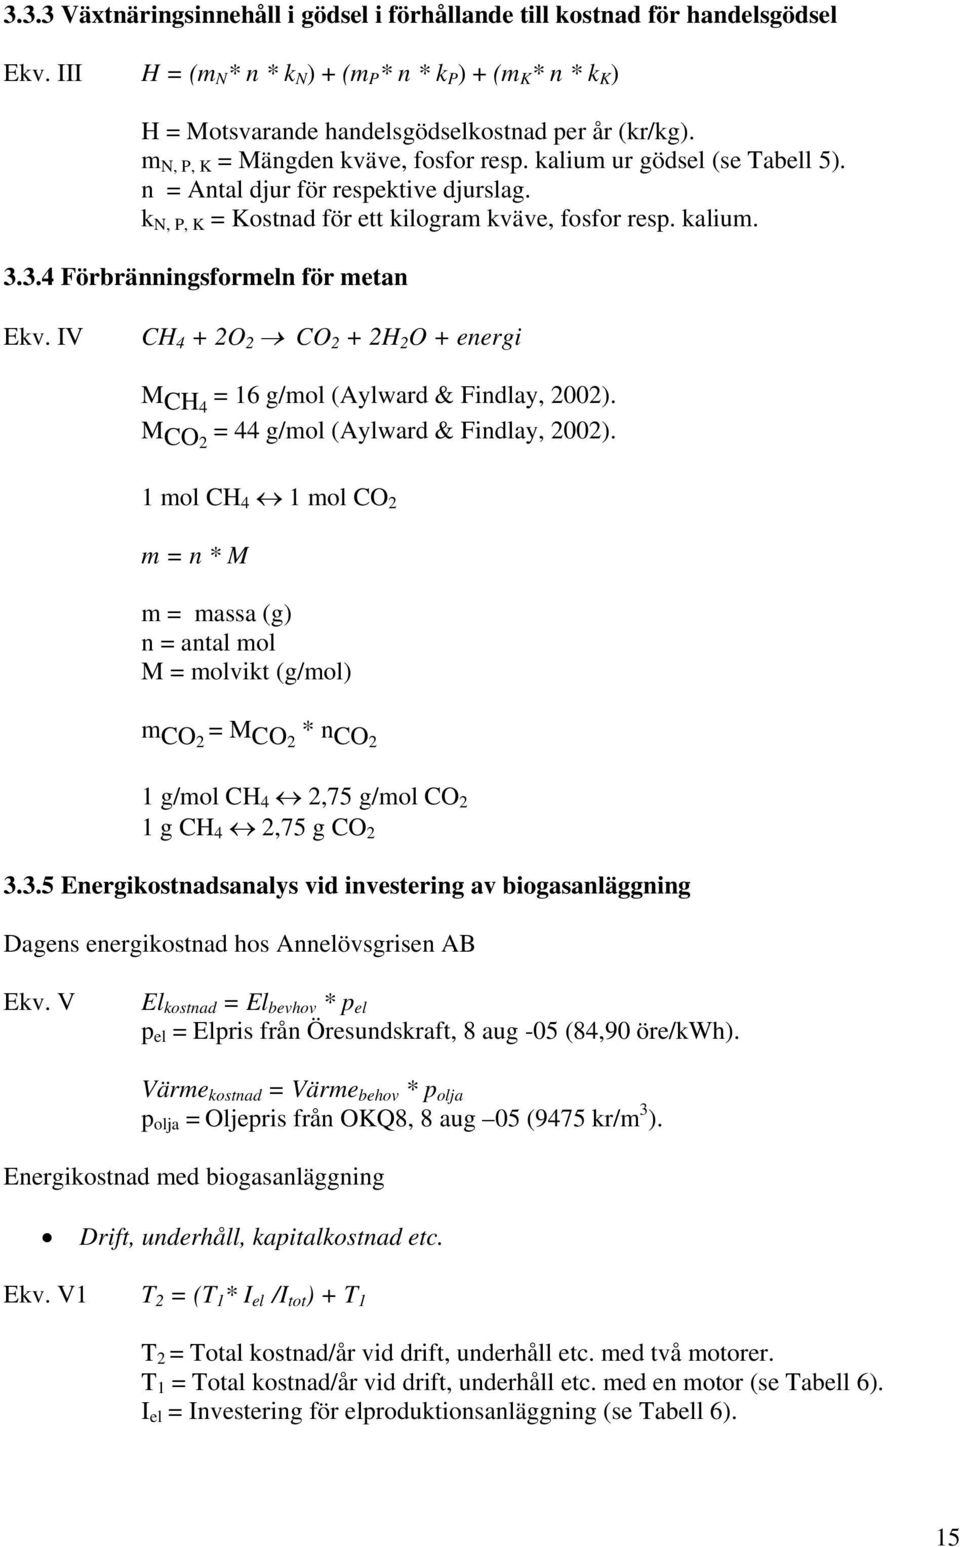 3.4 Förbränningsformeln för metan Ekv. IV CH 4 + 2O 2 CO 2 + 2H 2 O + energi M CH4 = 16 g/mol (Aylward & Findlay, 2002). M CO2 = 44 g/mol (Aylward & Findlay, 2002).